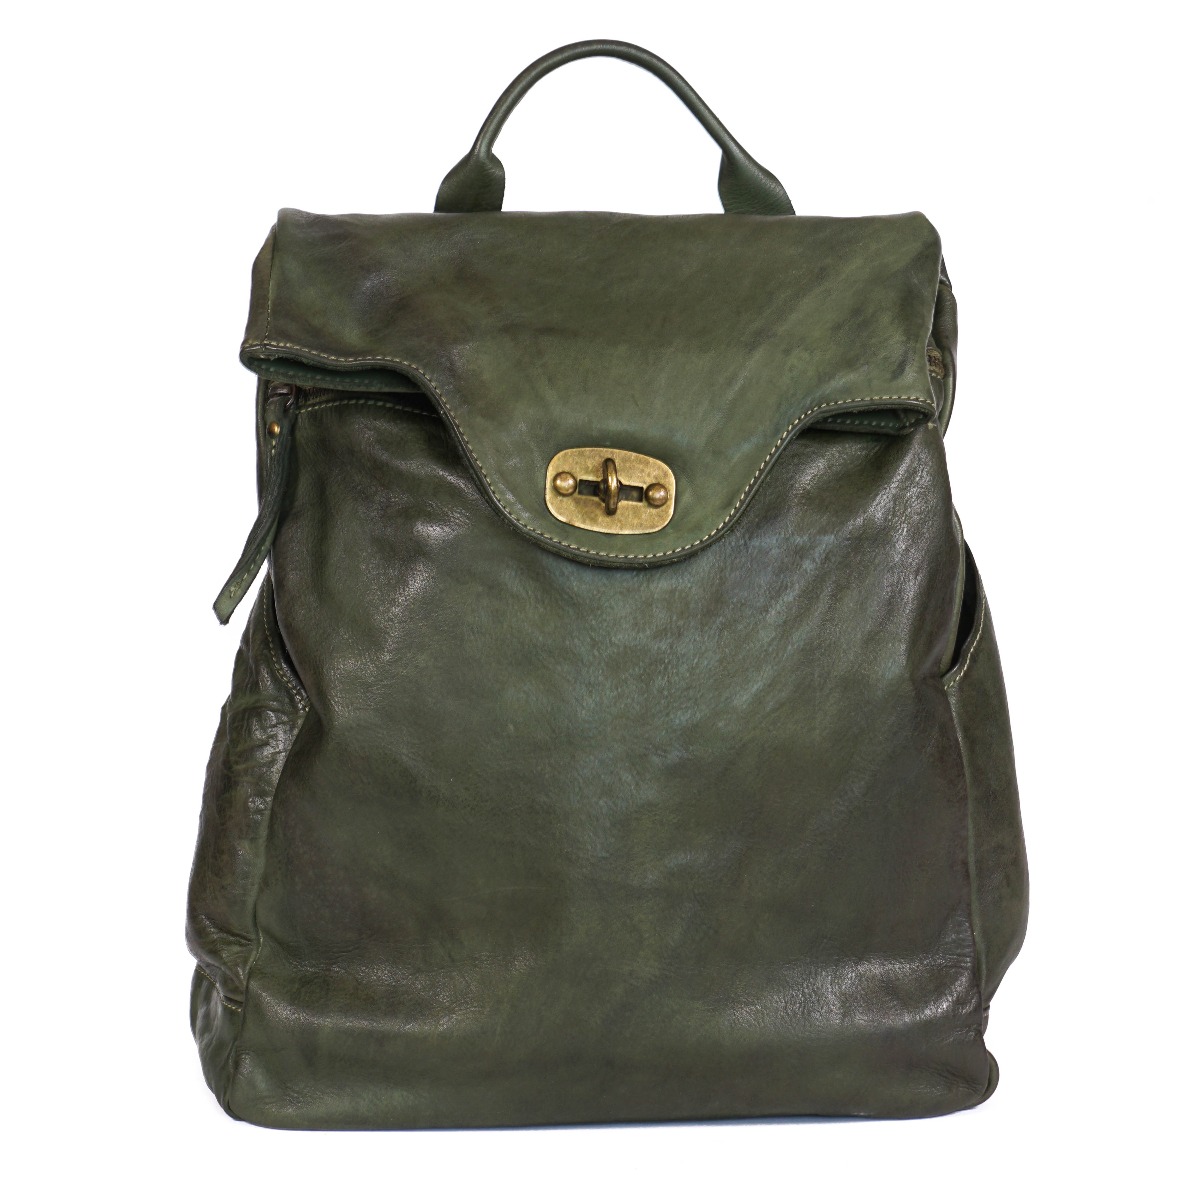 Big soft leather vintage unisex backpack